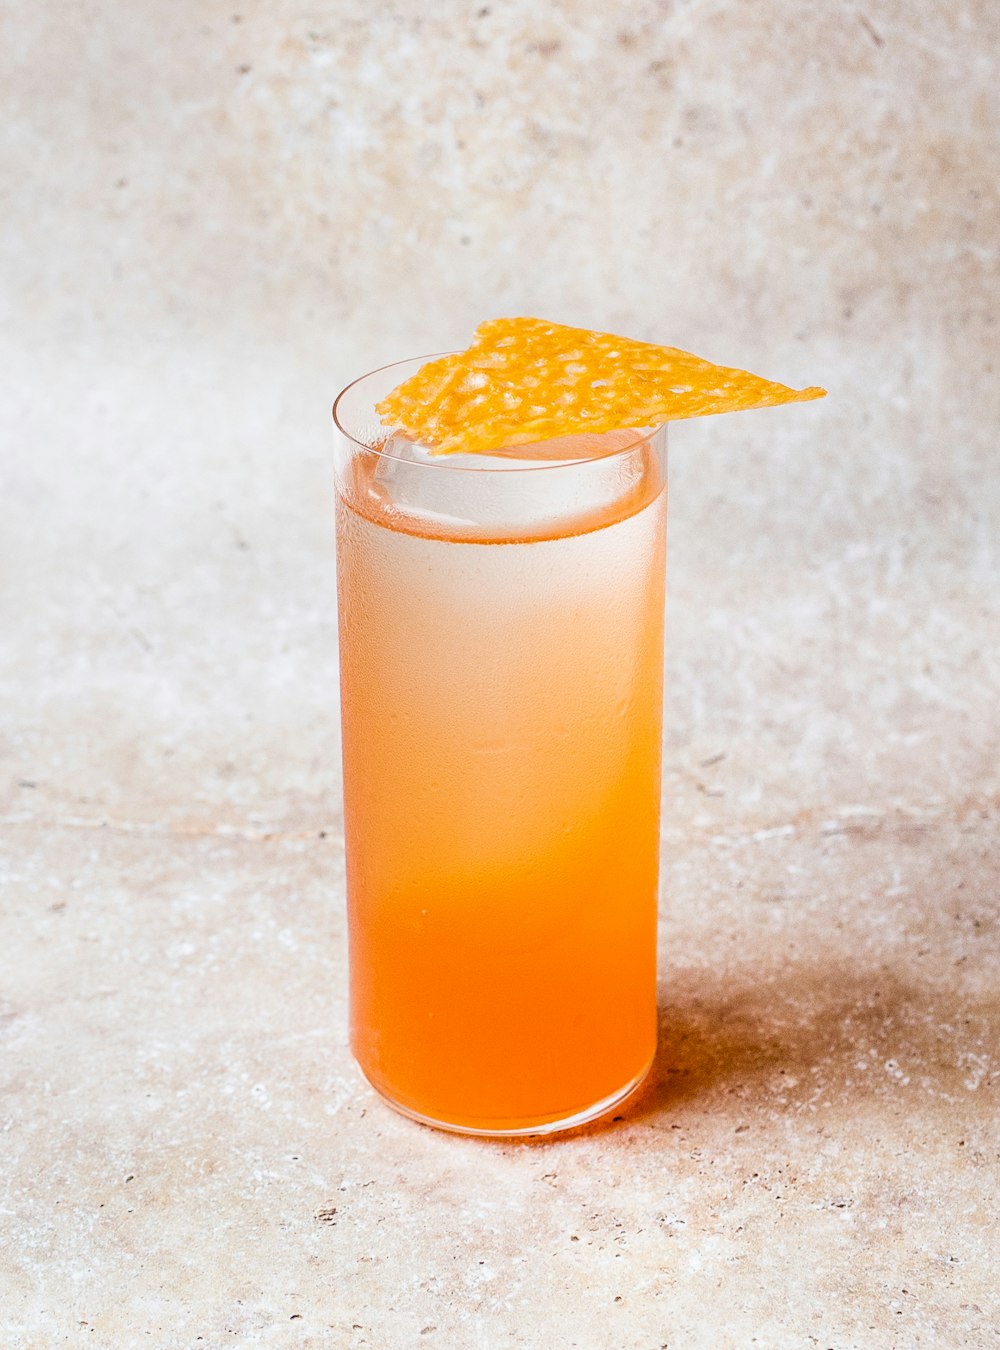 Bicchiere trasparente con liquido arancione